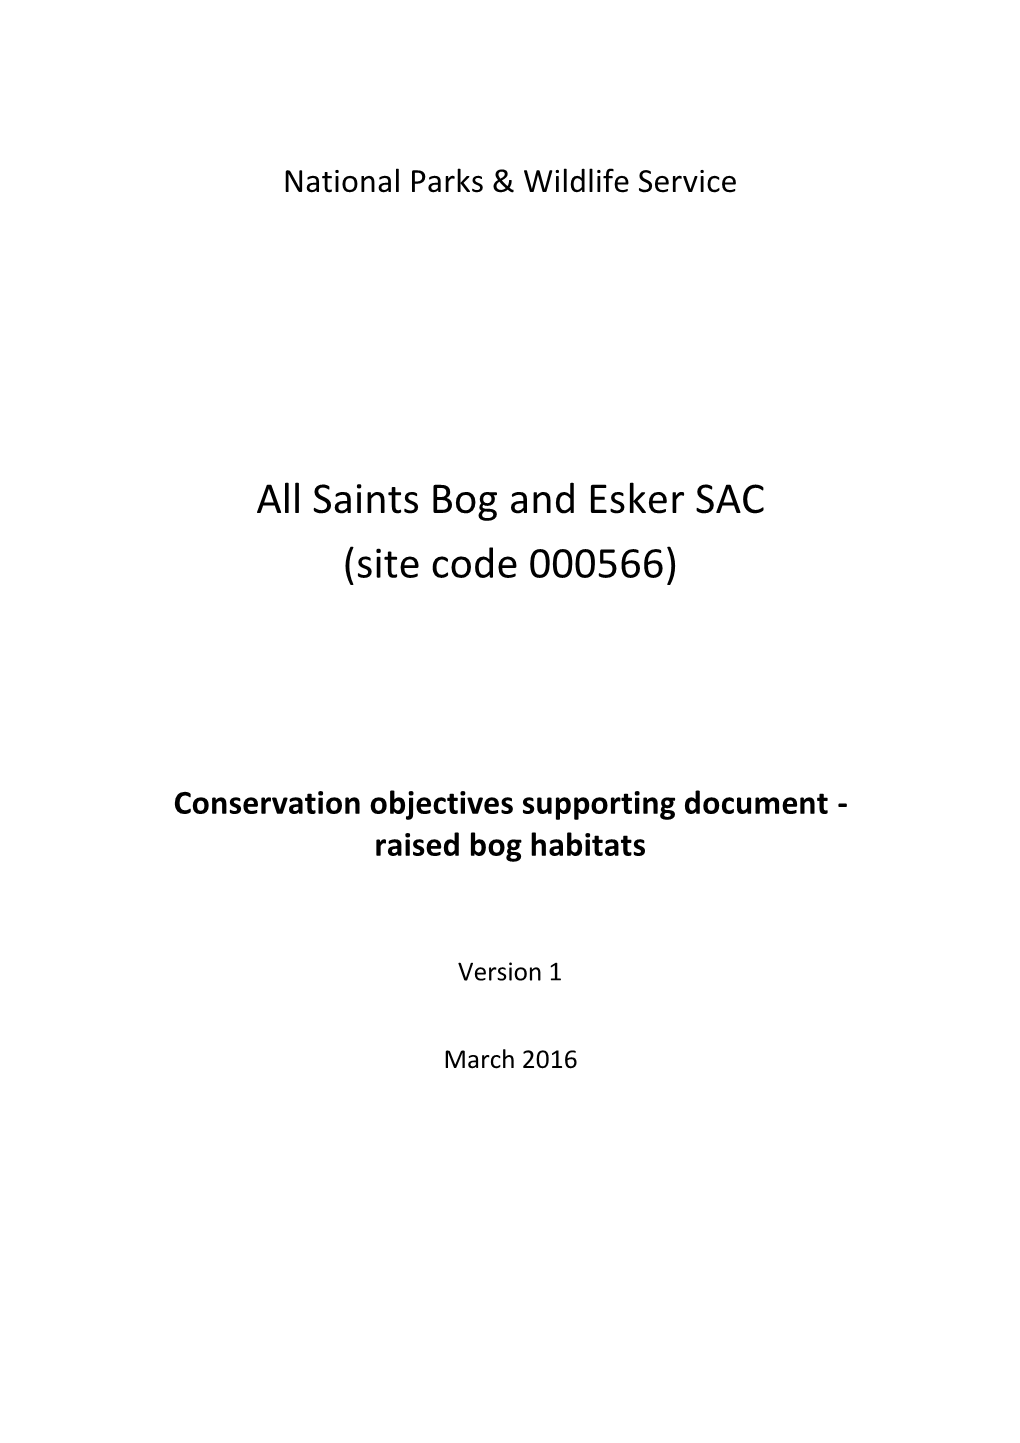 Saints Bog and Esker SAC (Site Code 000566)